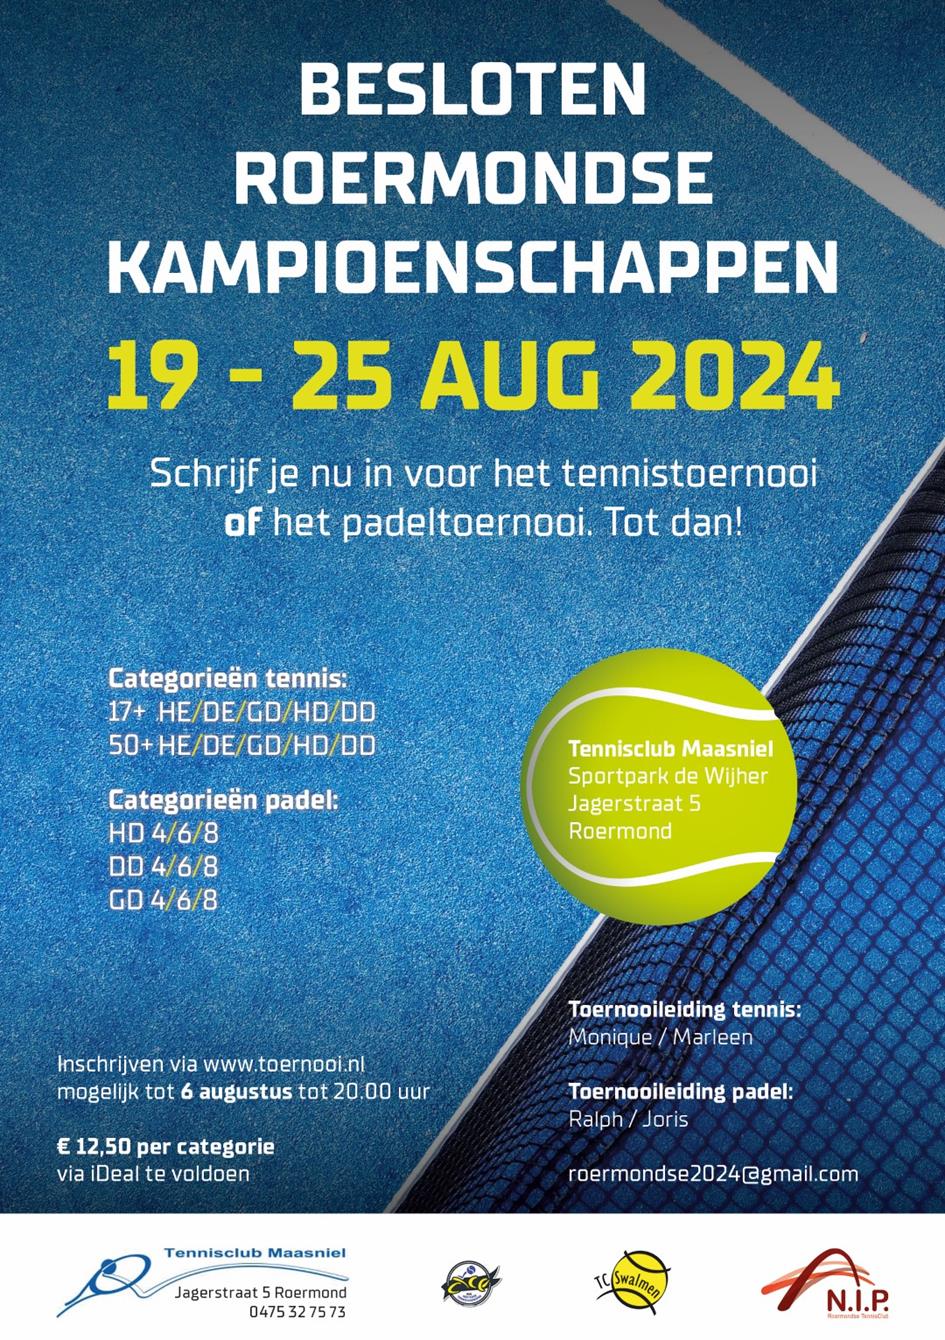 Besloten-Roermondse-Kamioenschappen-2024-A5 (Large).jpg